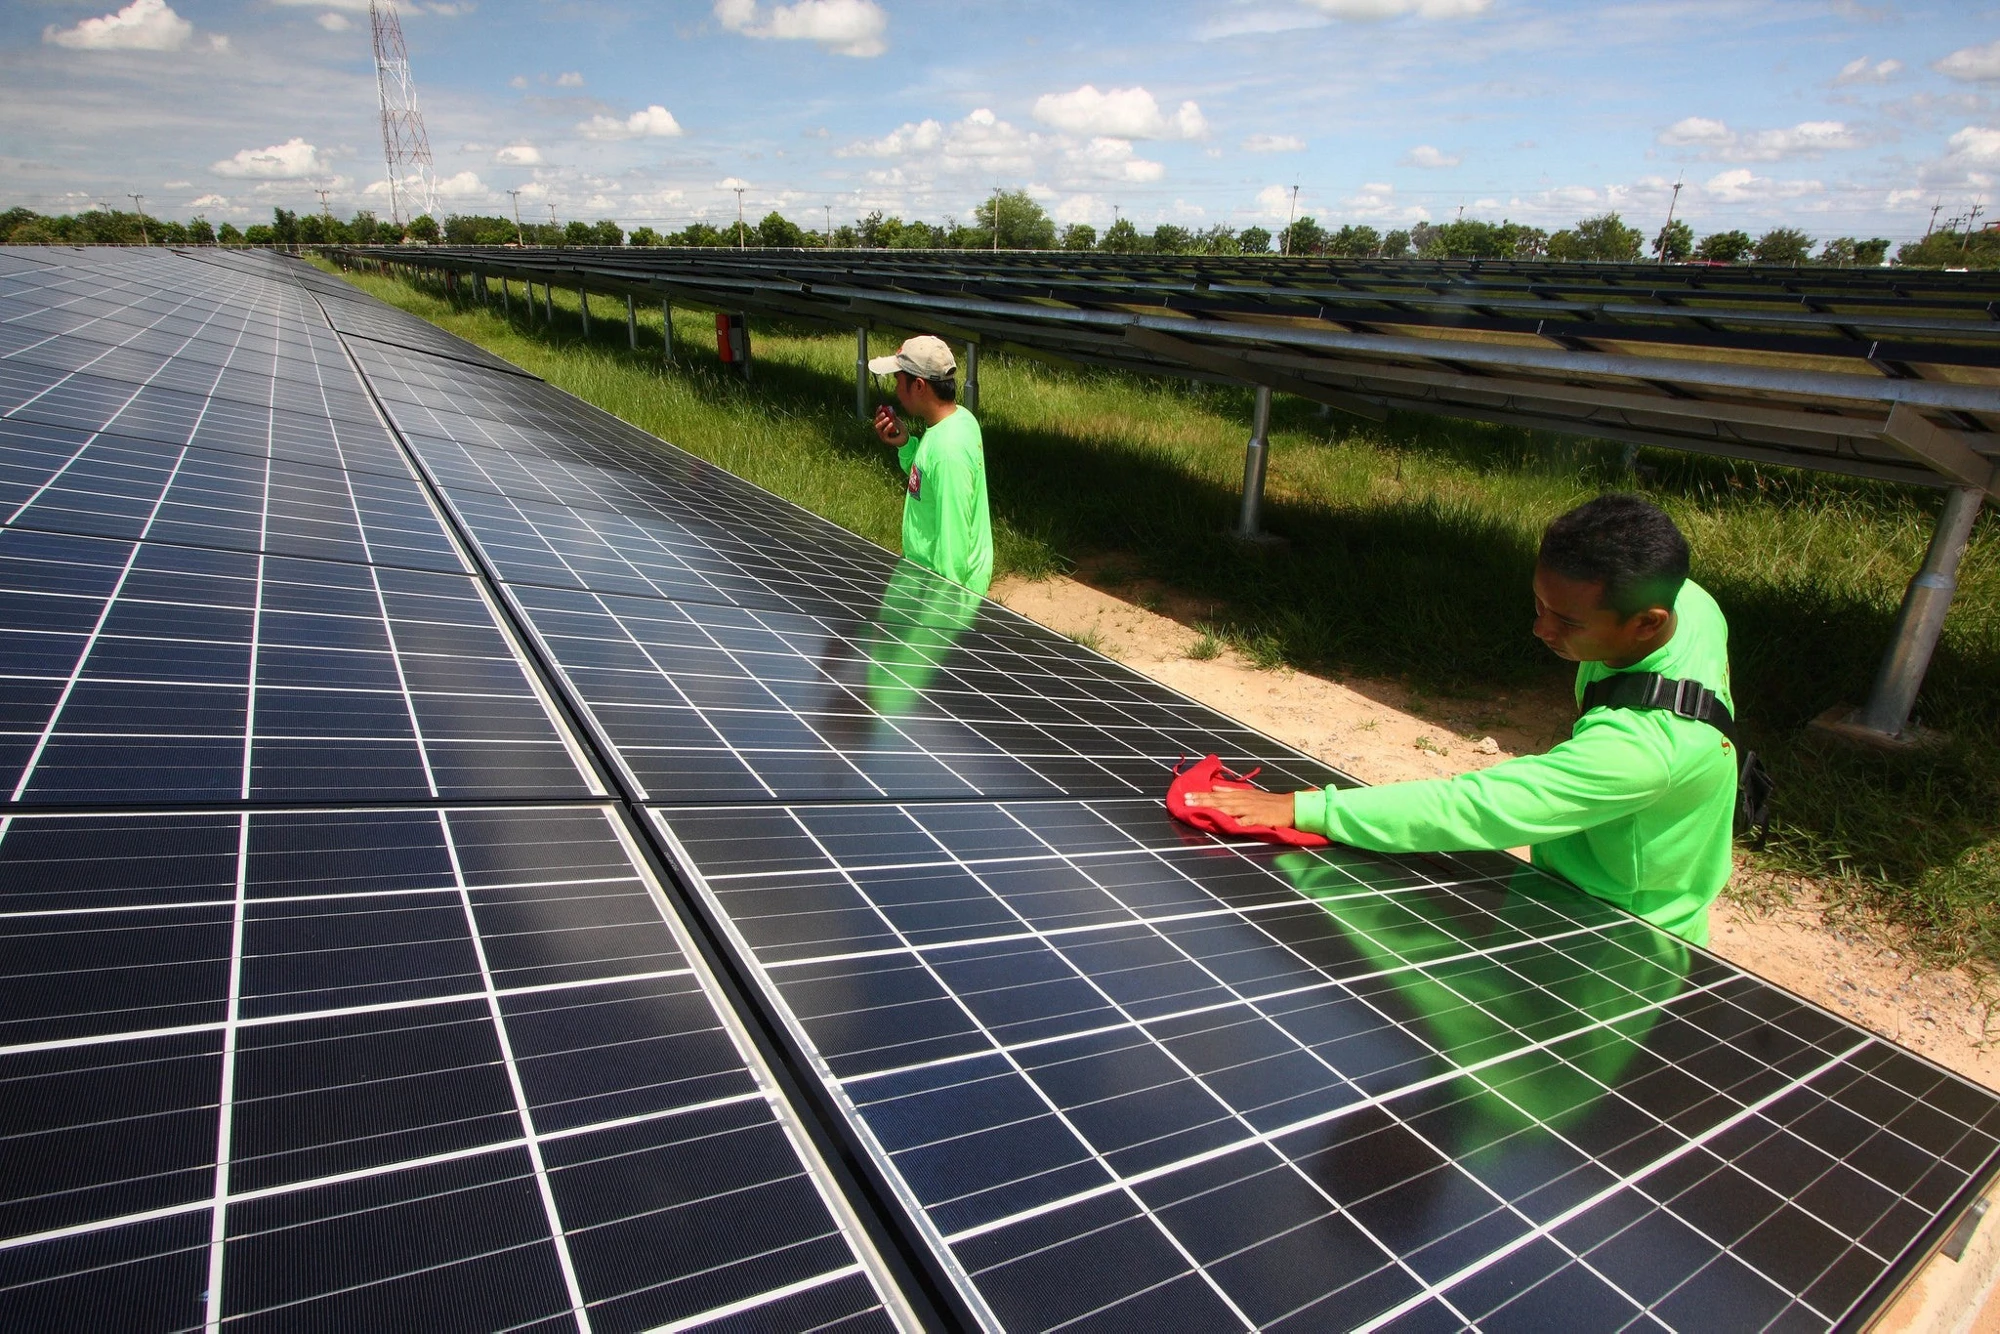 Estación de energía solar Korat 1 en Tailandia, propiedad del cliente de la Corporación Financiera Internacional, Solar Power Co.